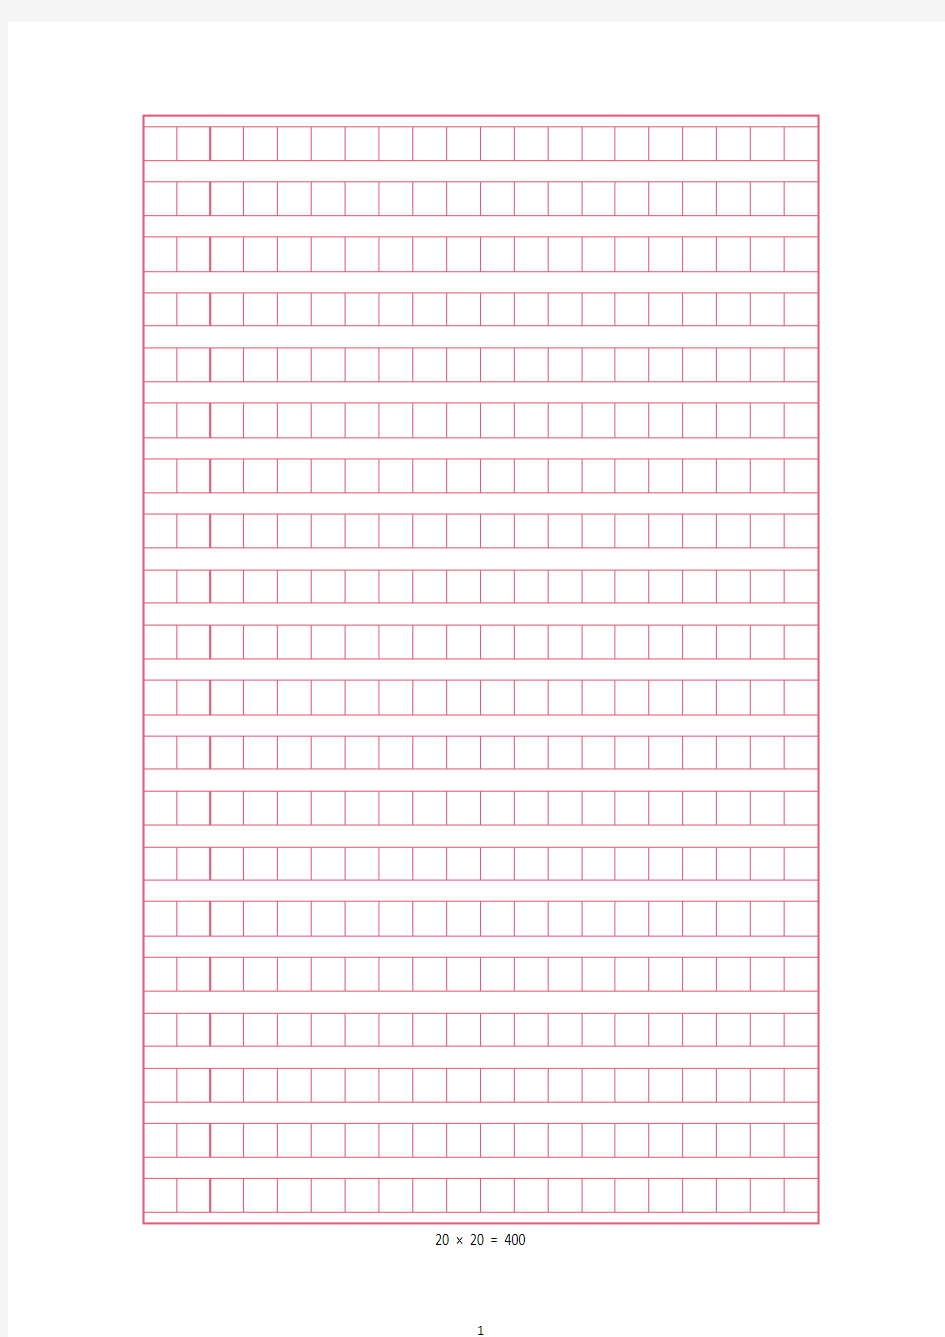 申论作文格子纸模板(2020年整理).pdf